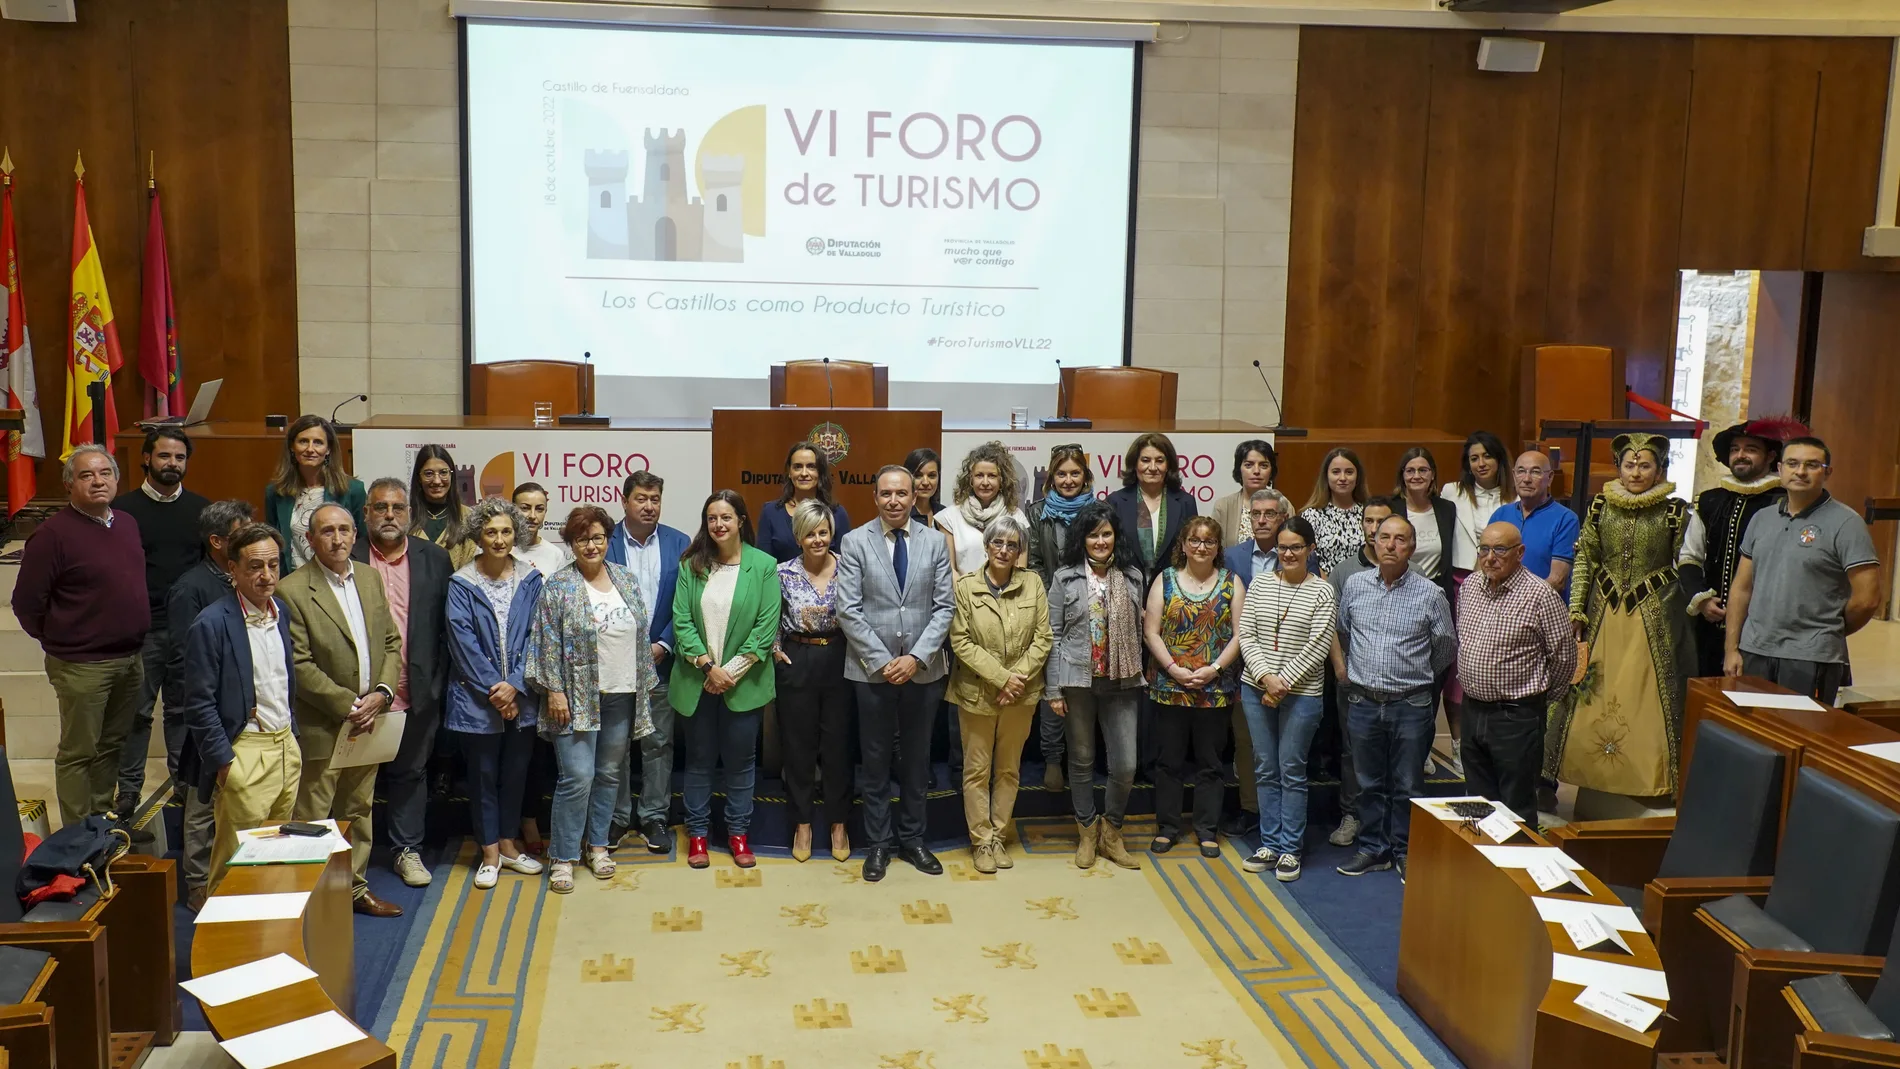 La Diputación de Valladolid celebra el VI Foro de Turismo Provincia de Valladolid ‘Los castillos como producto turístico’